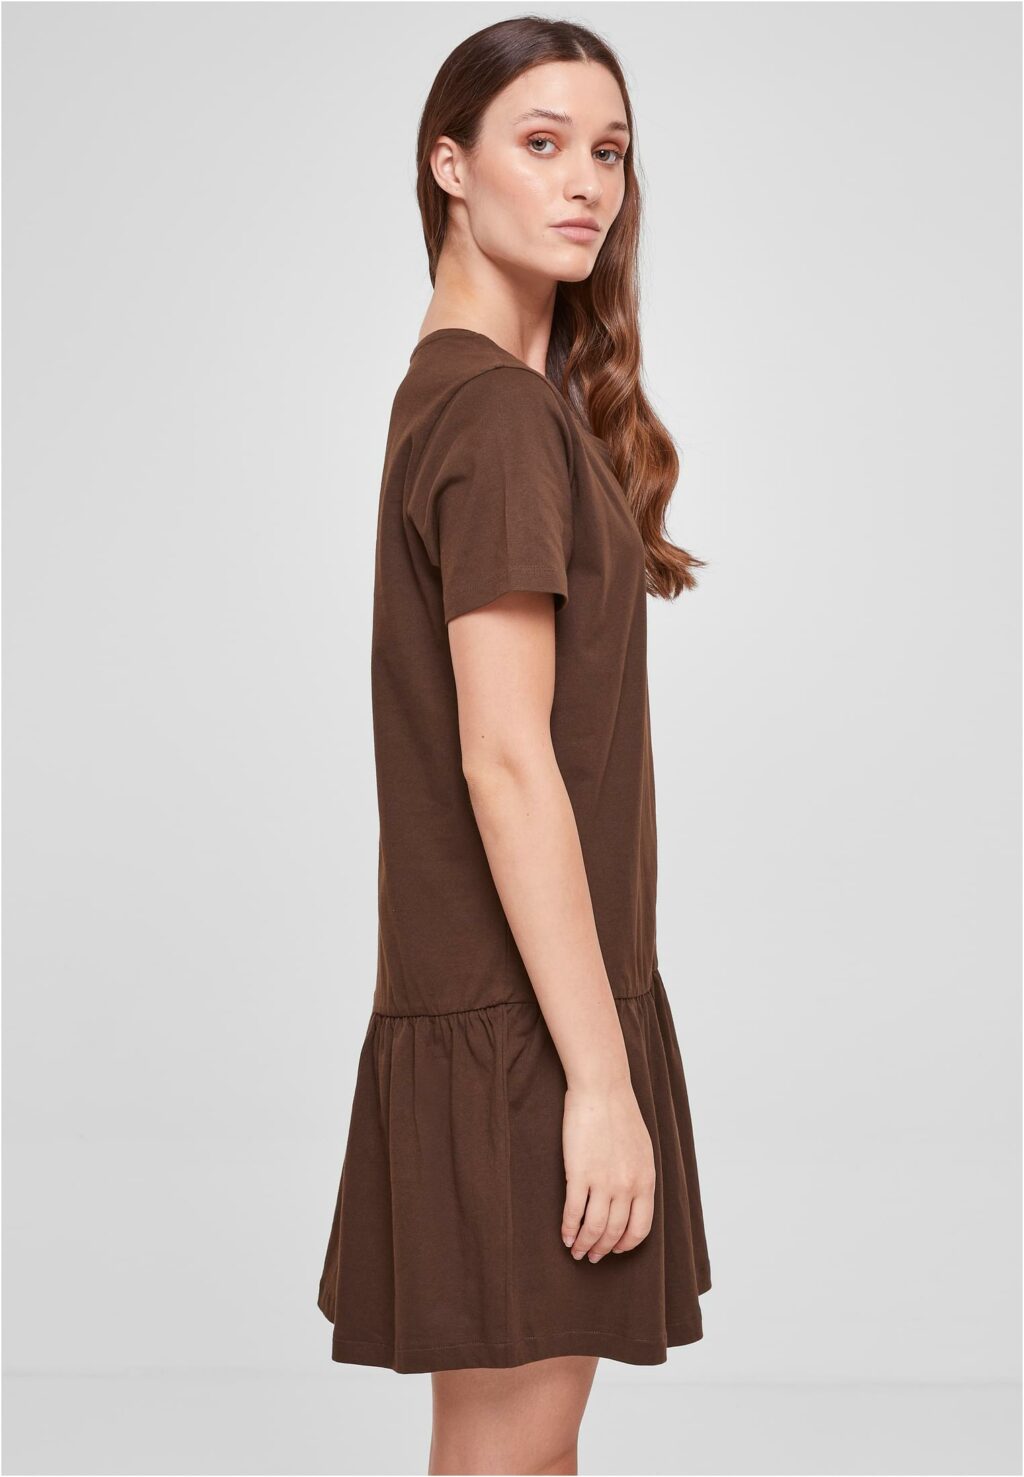 Urban Classics Ladies Valance Tee Dress brown TB4104